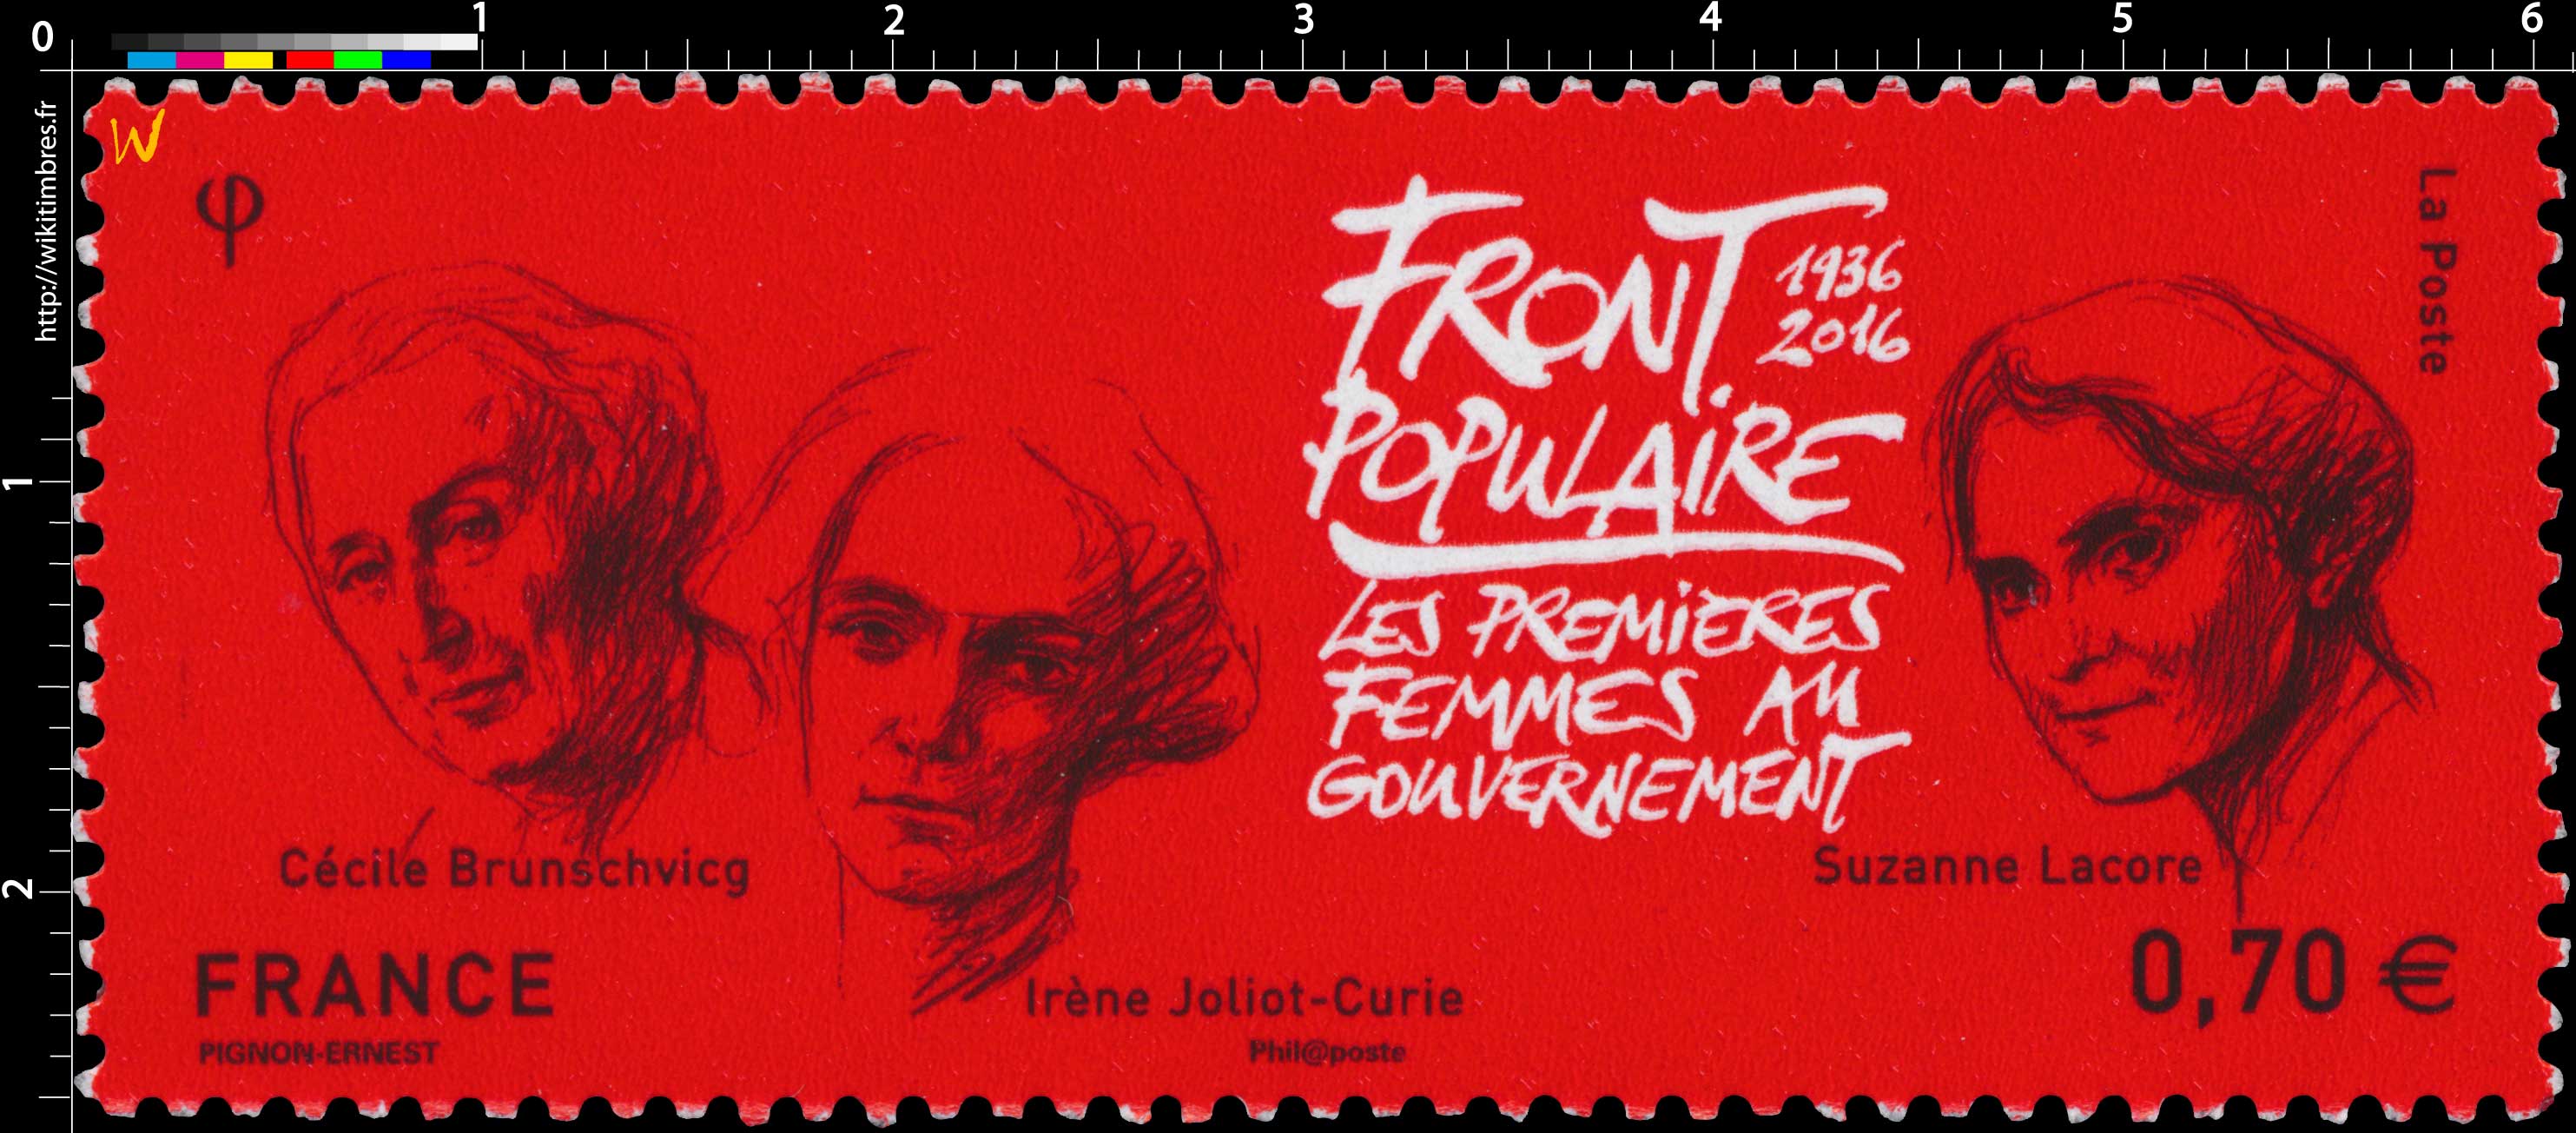 2016 Front Populaire 1936 - 2016 Les premières femmes au gouvernement - Cécile Brunschvicg - Irène Joliot-Curie - Suzanne Lacore